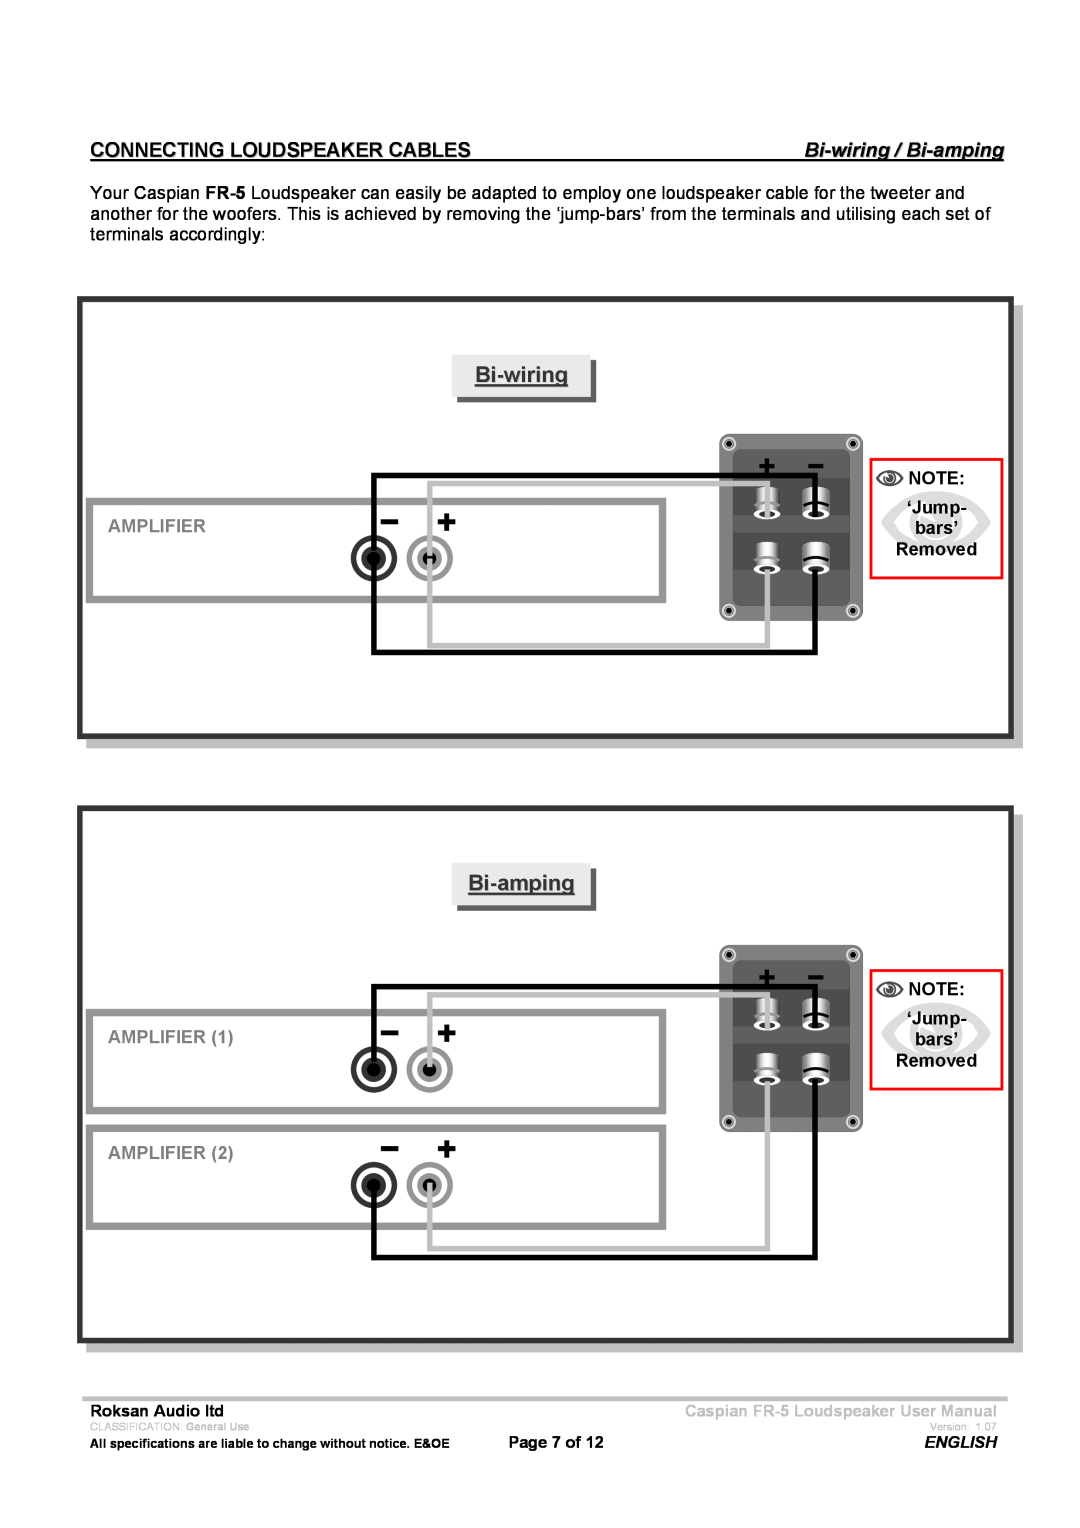 Roksan Audio FR - 5 user manual Connecting Loudspeaker Cables, Bi-wiring / Bi-amping, Amplifier 